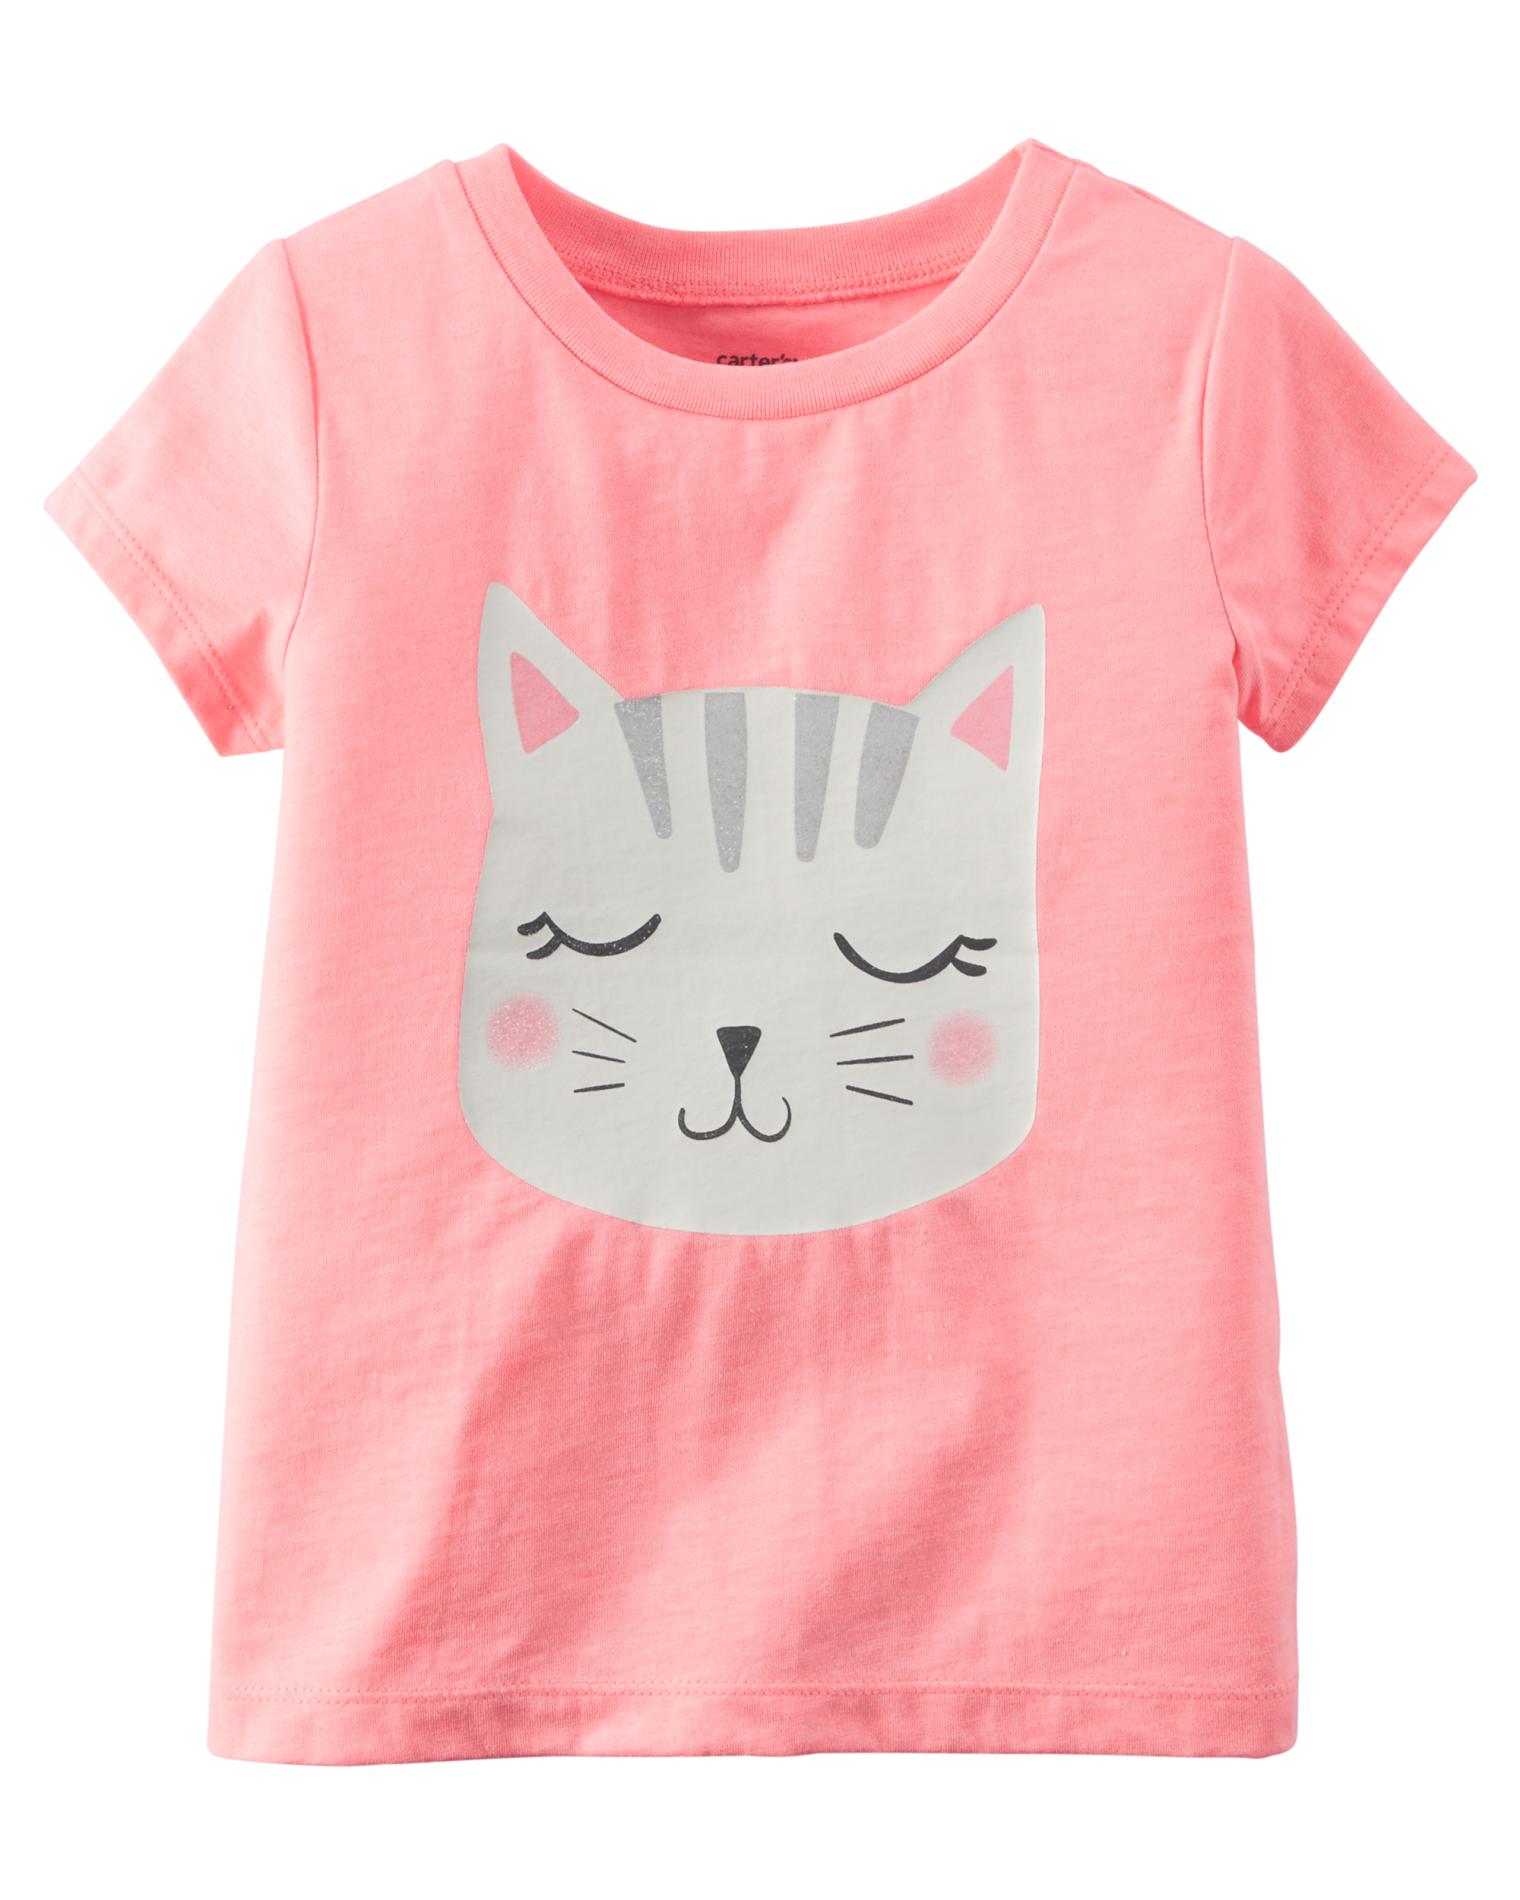 Carter's Girls' Short-Sleeve Graphic T-Shirt - Cat